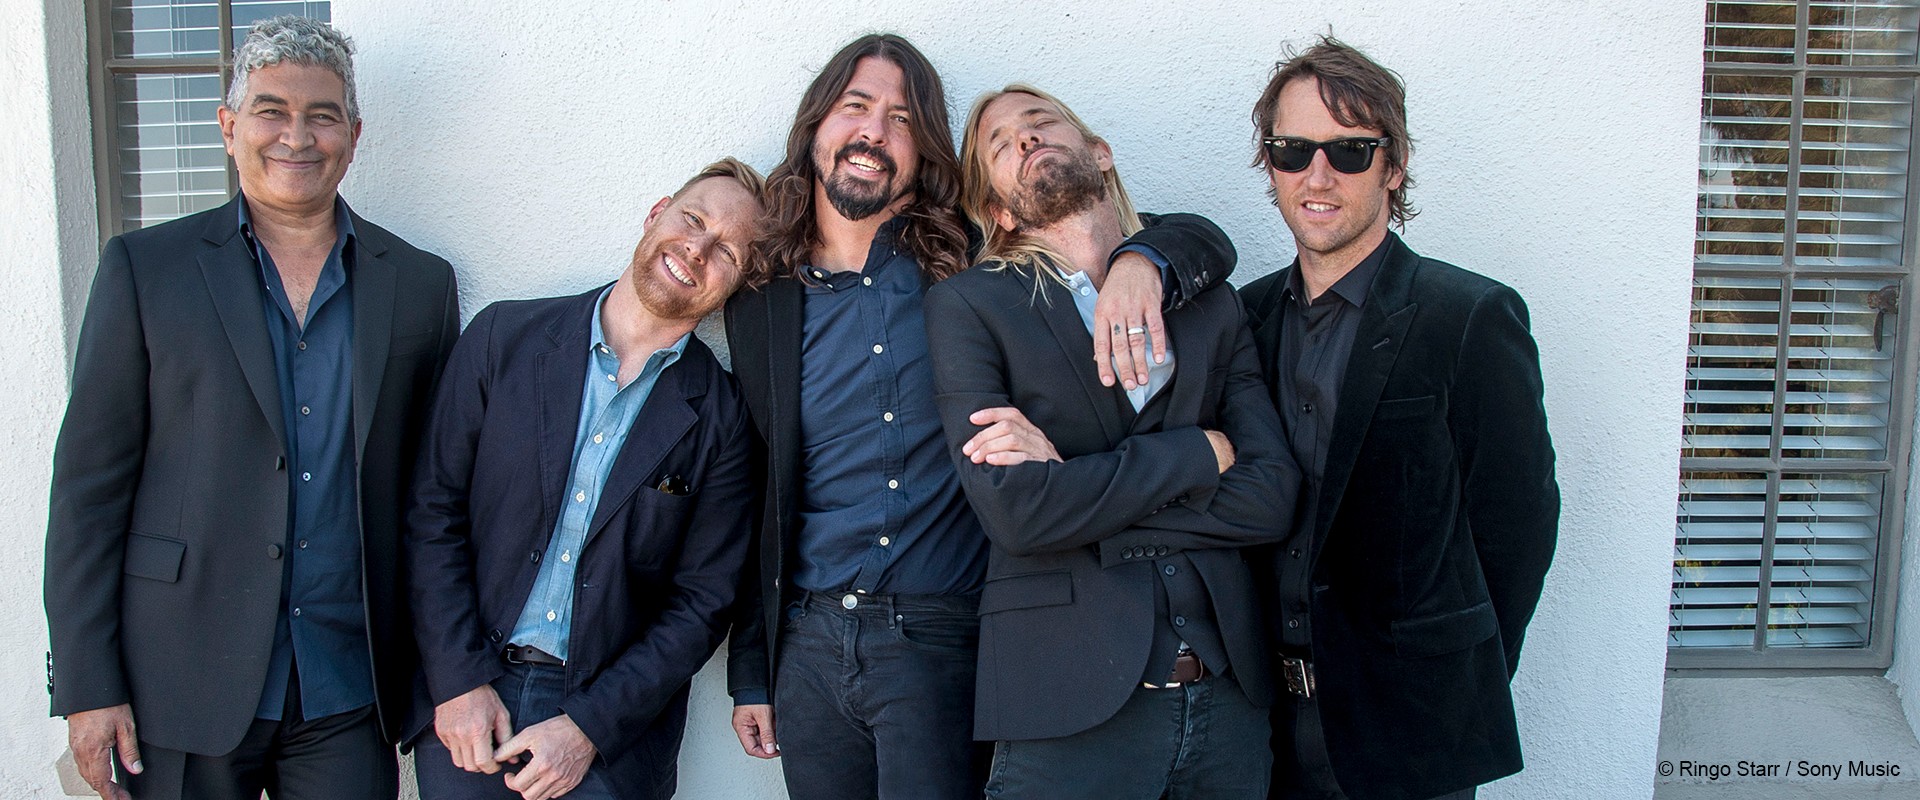 Autobiografie von Foo Fighters-Frontmann